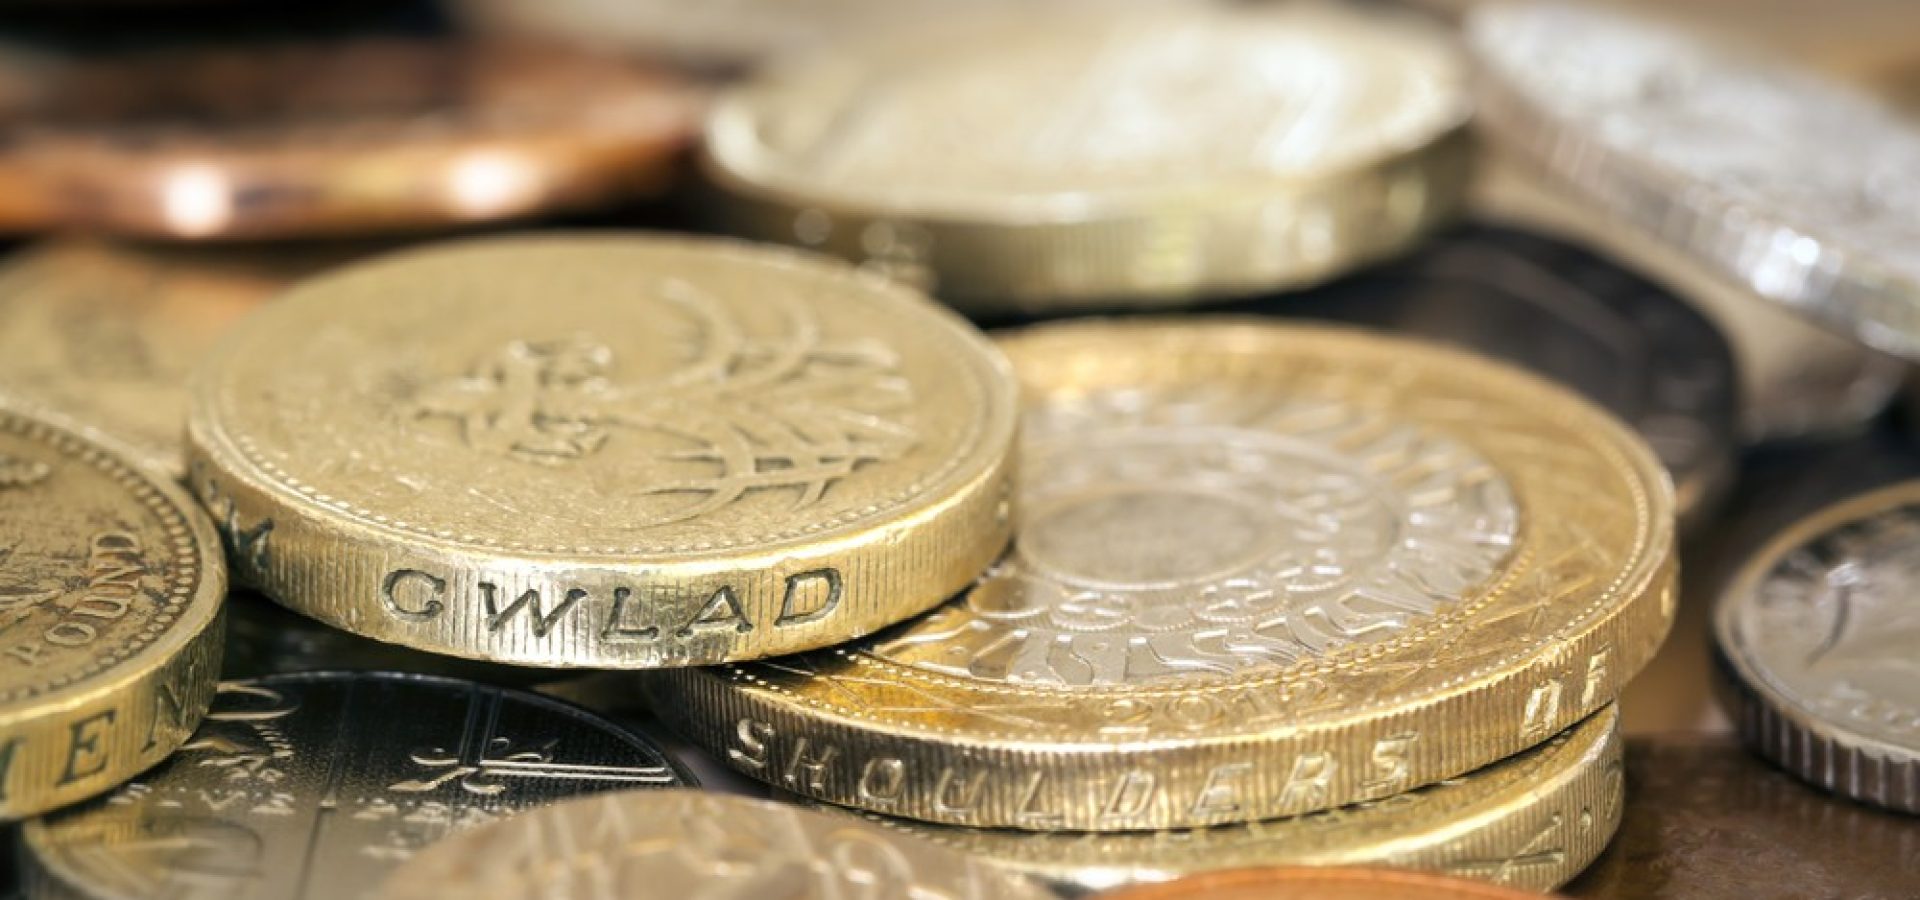 Wibest – UK Currency: British pound coins.